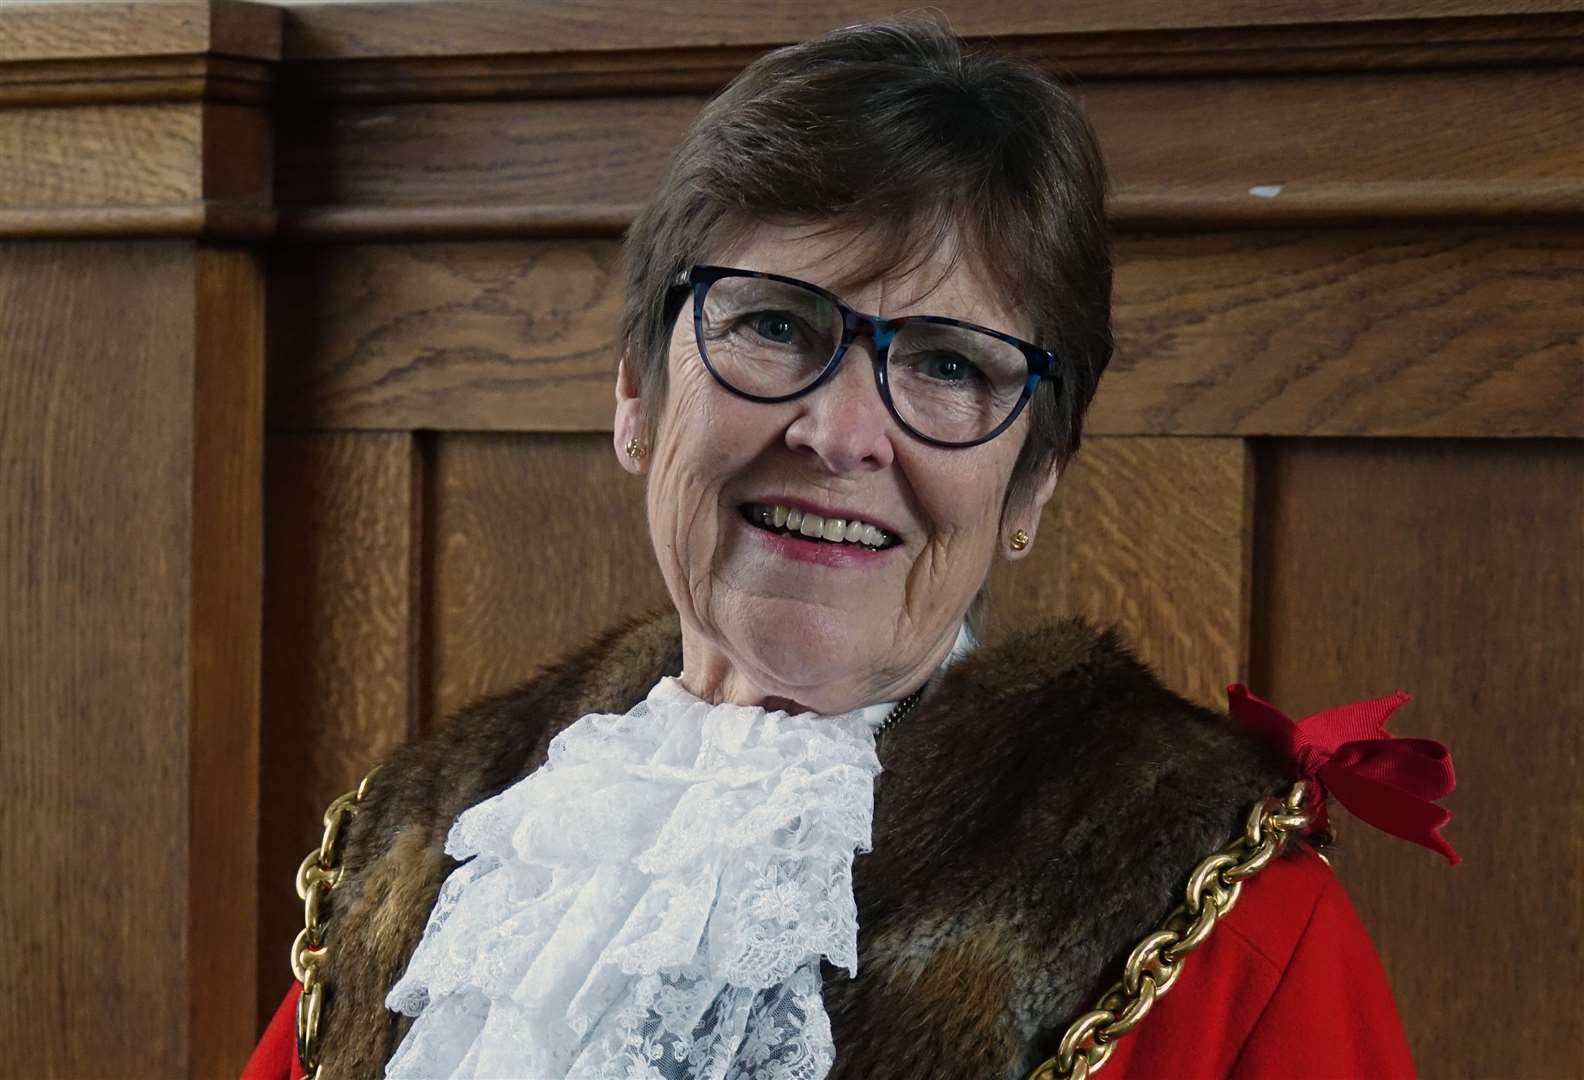 Mayor of Maidstone, Cllr Fay Gooch